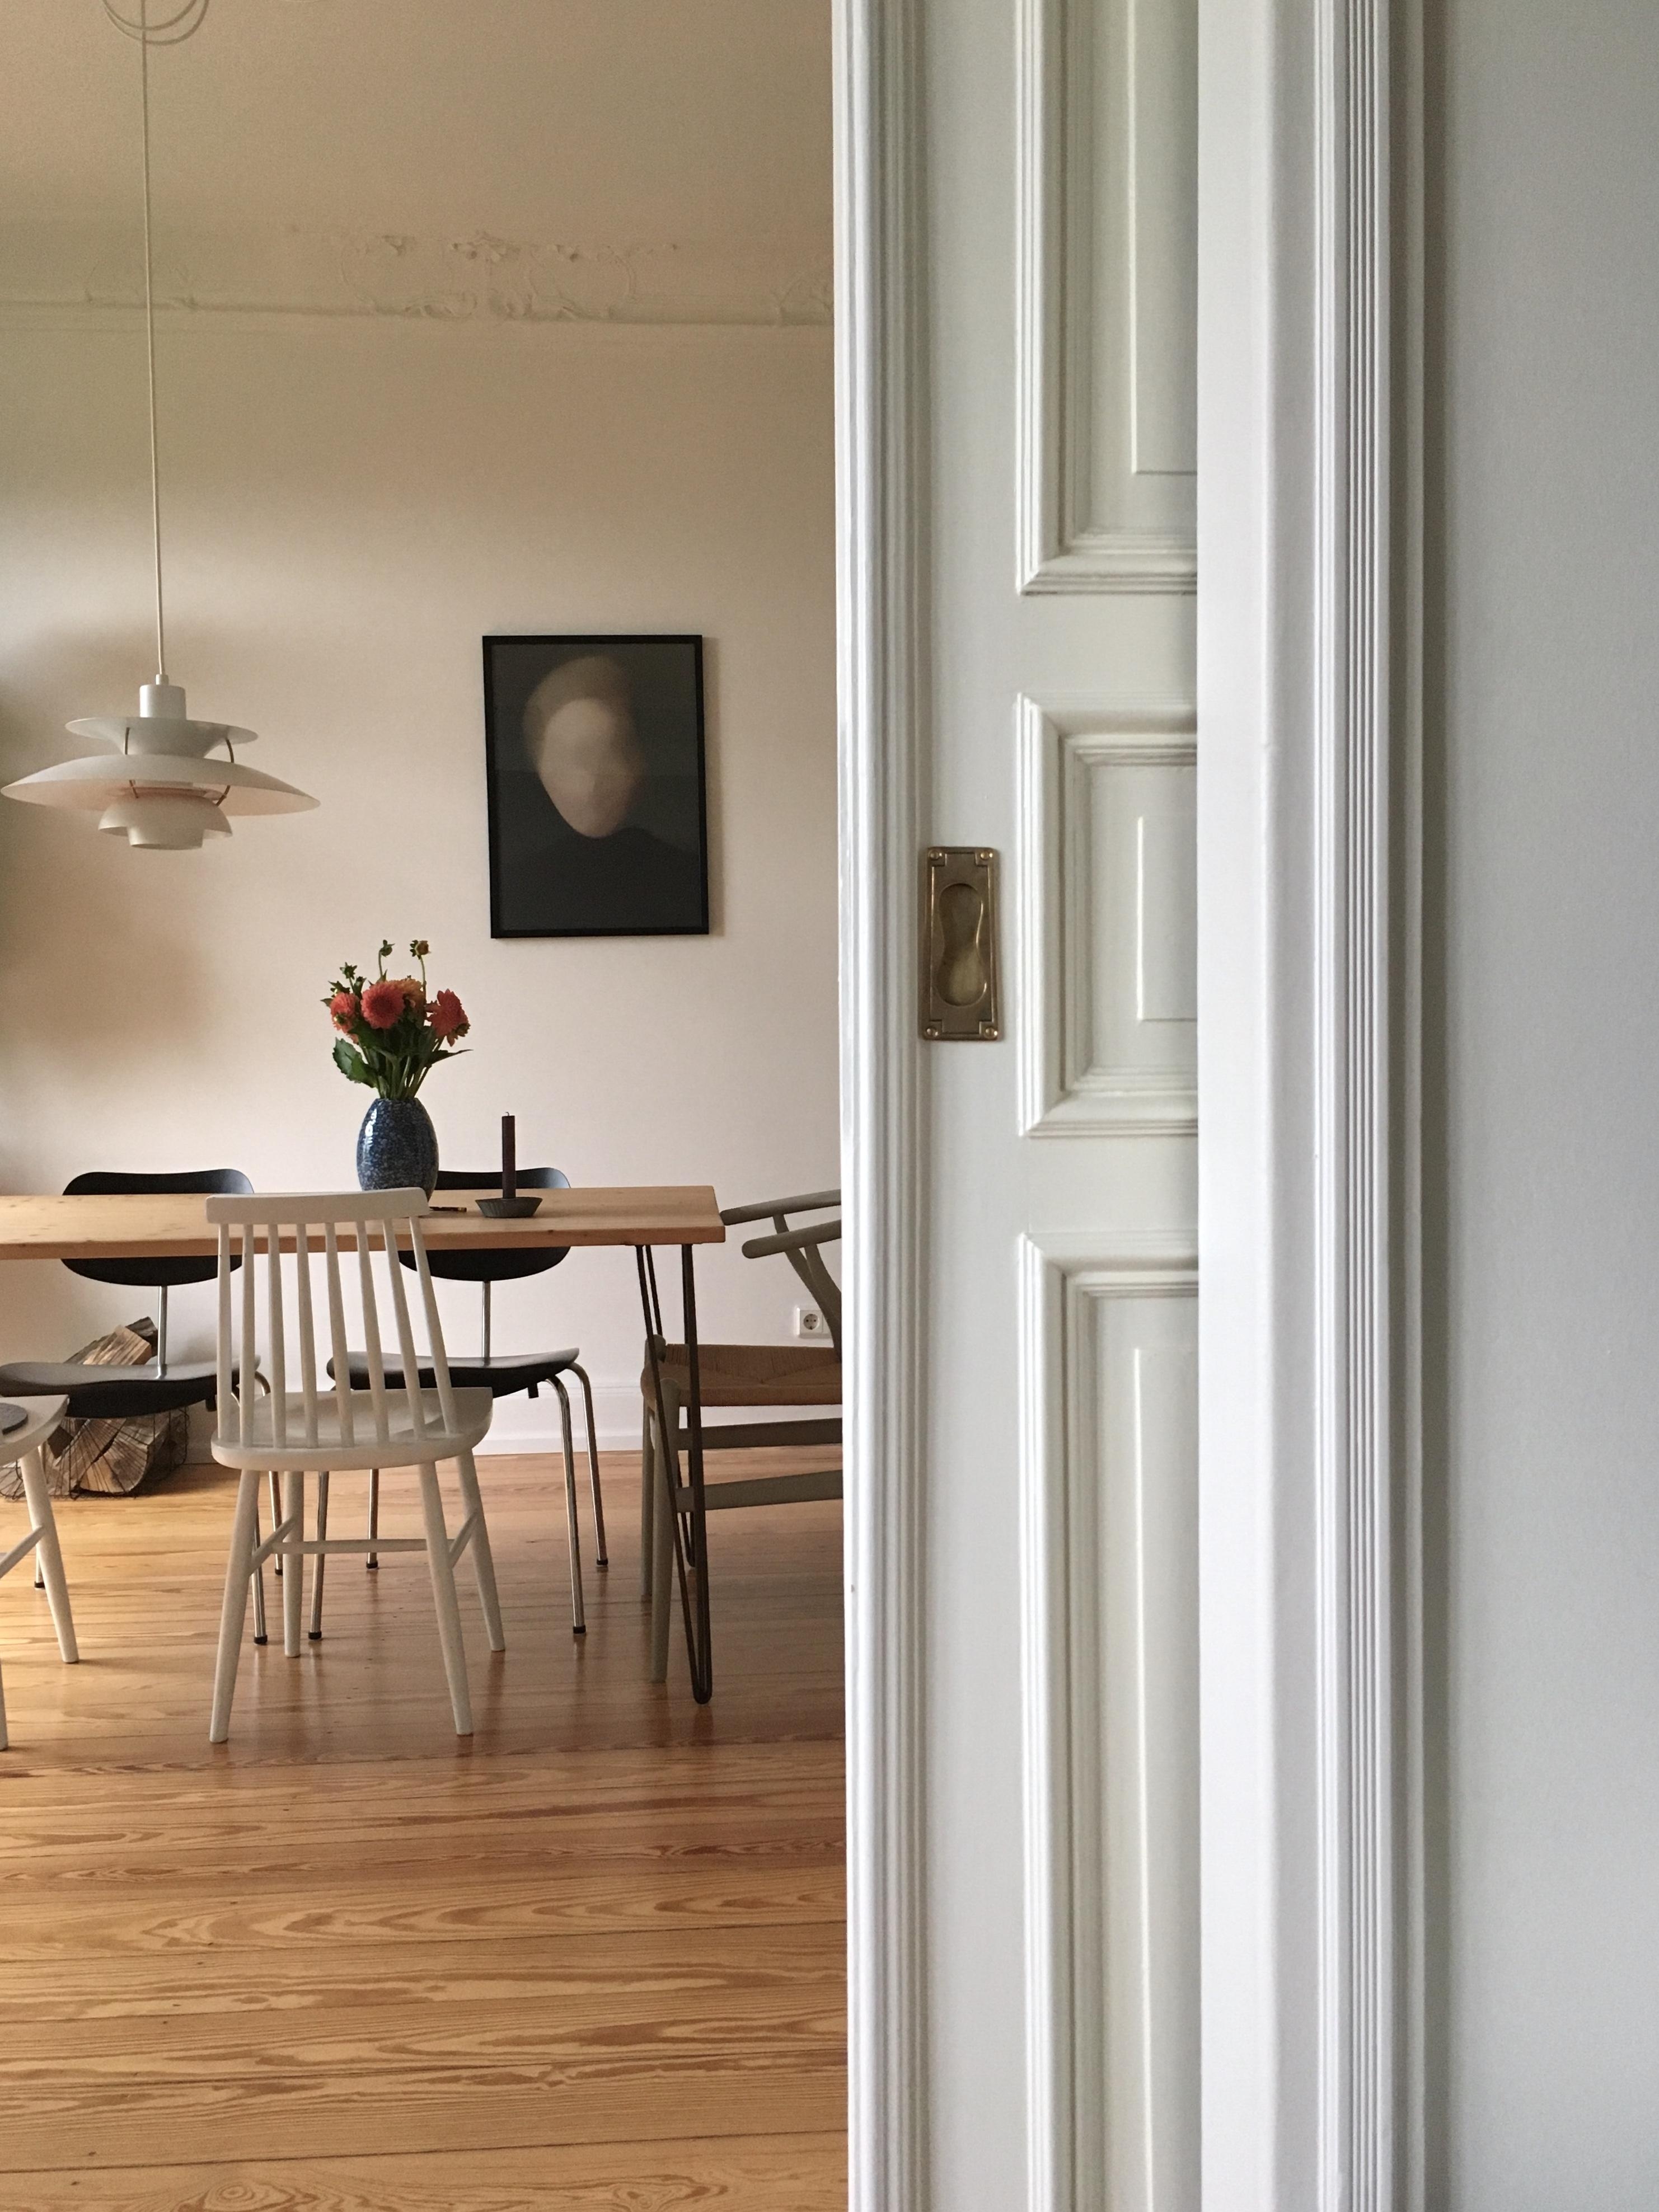 ich liebe minimalismus #altbau #altbauliebe #esszimmer #diningroom #esstisch #diy #blumen #bild #minimalismus #lampe